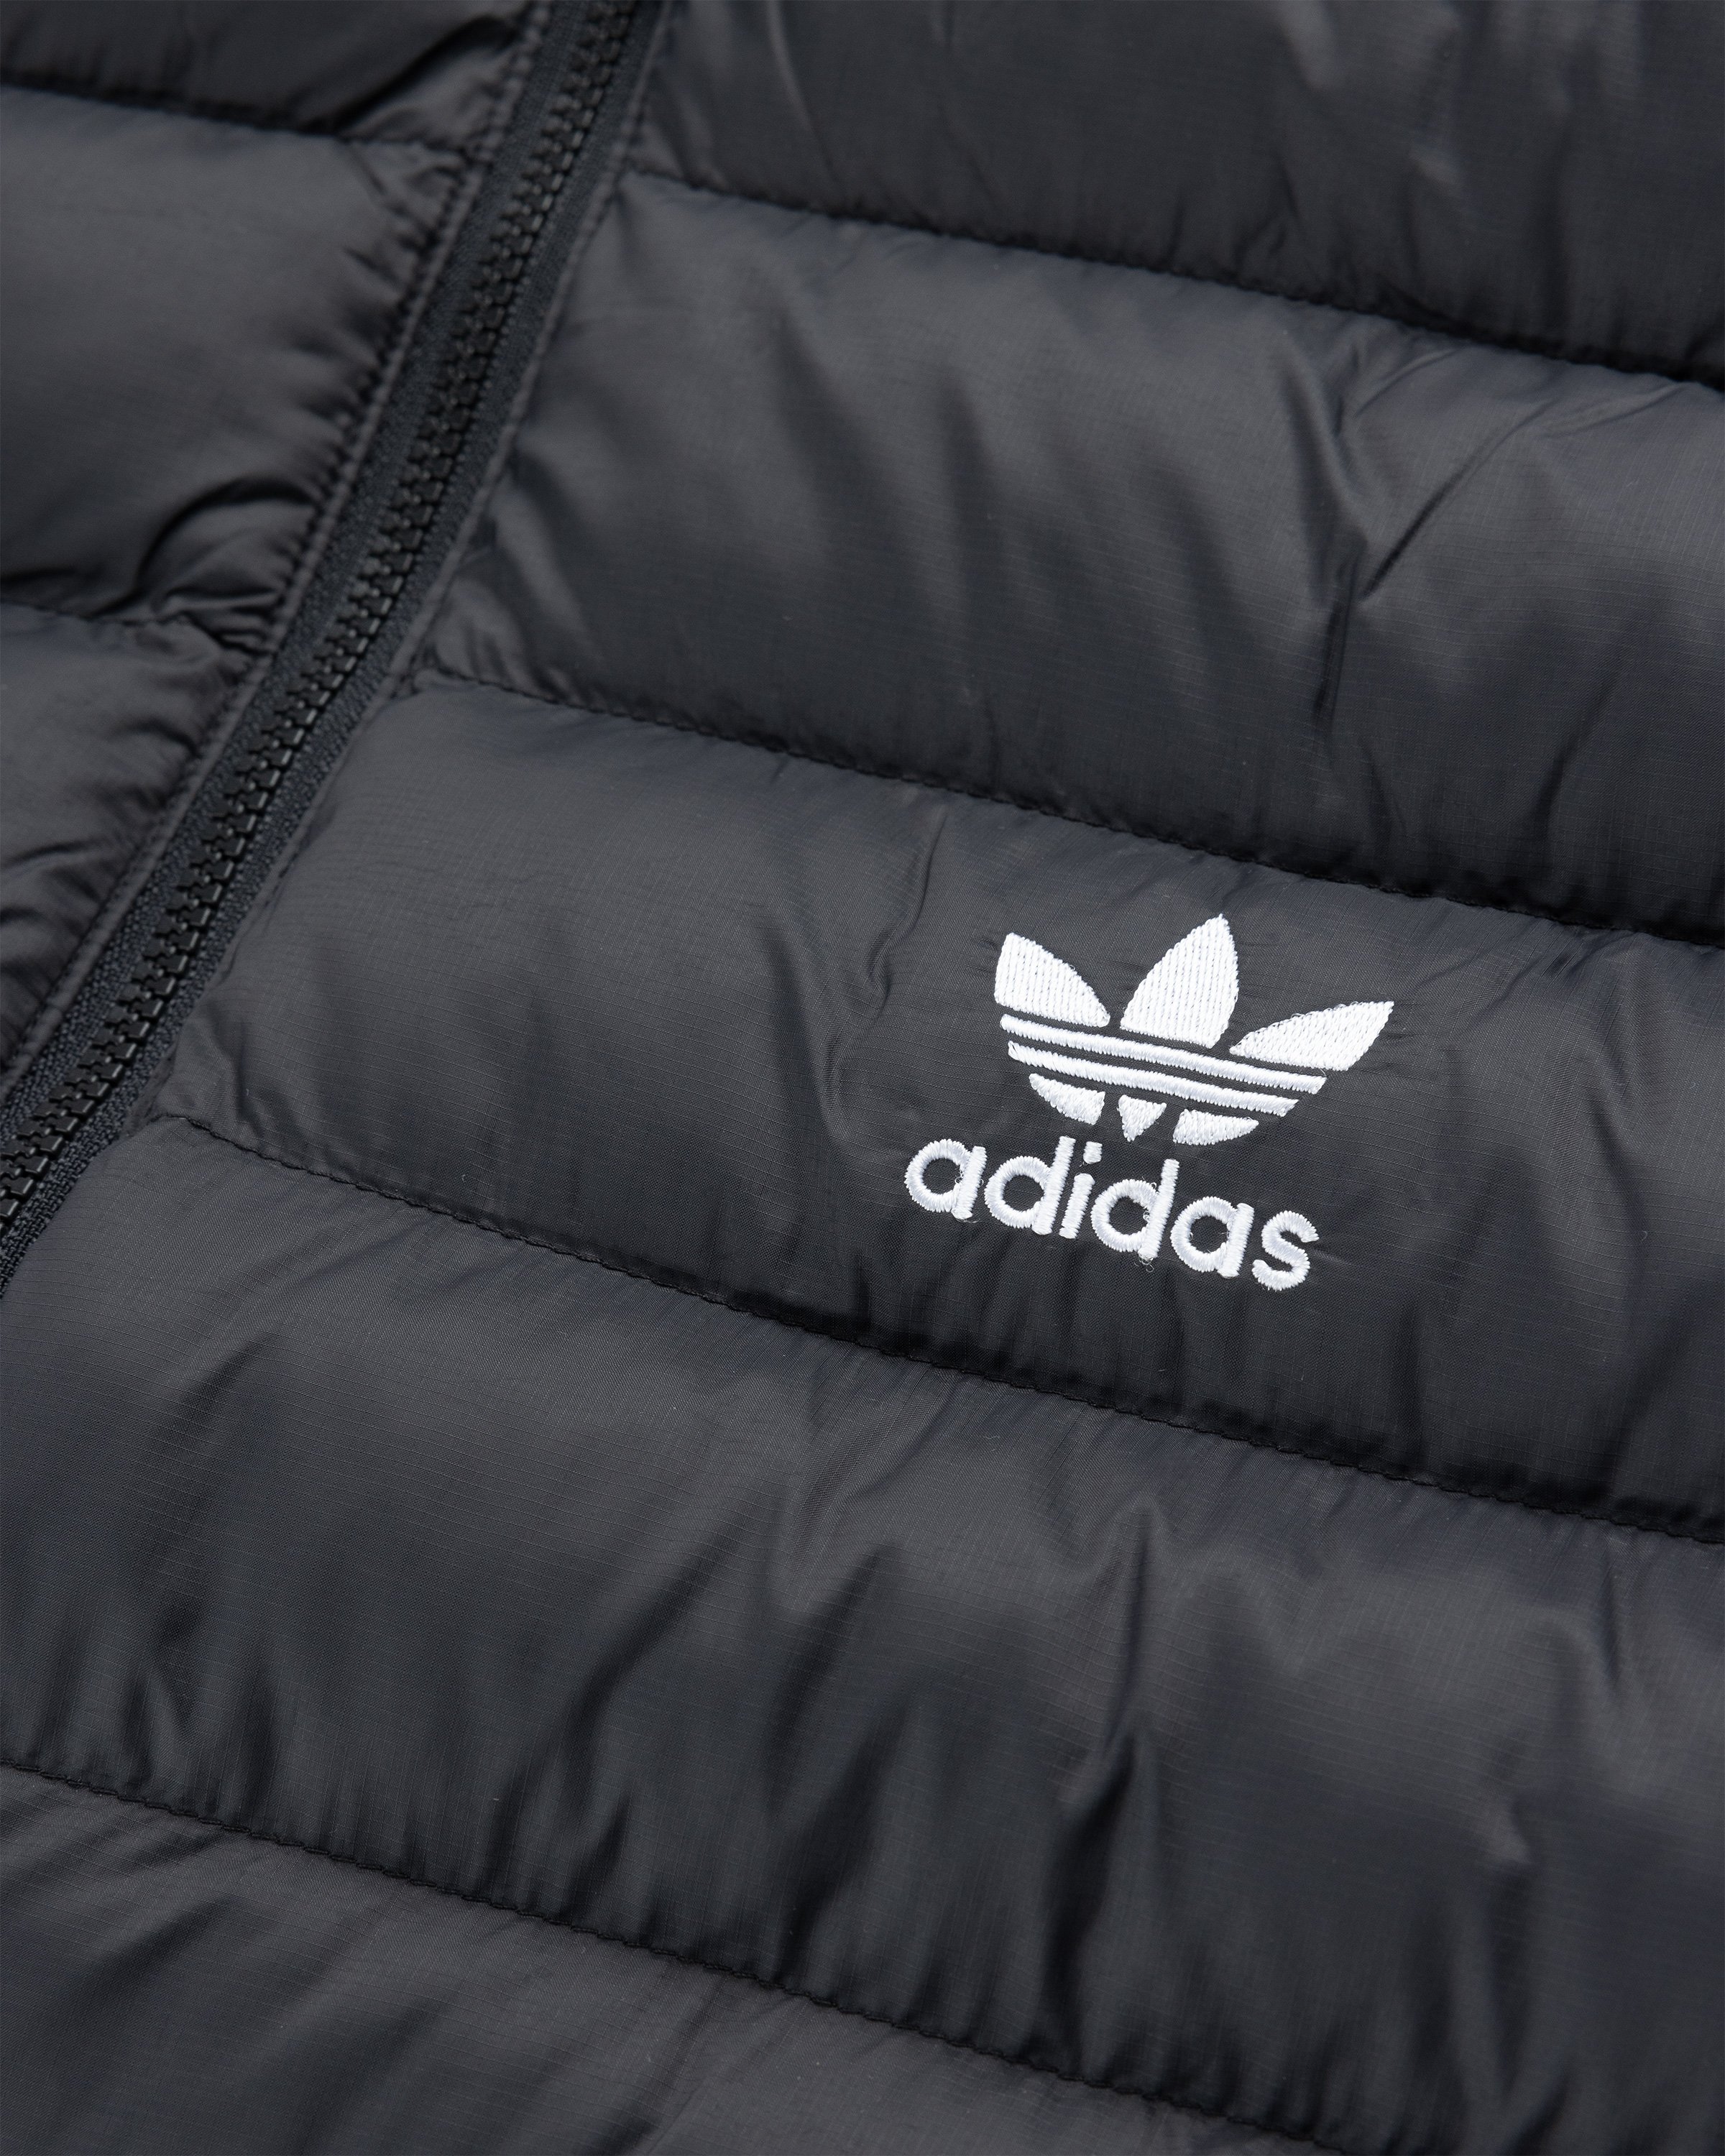 Adidas - Padded Jacket Black - Clothing - Black - Image 5